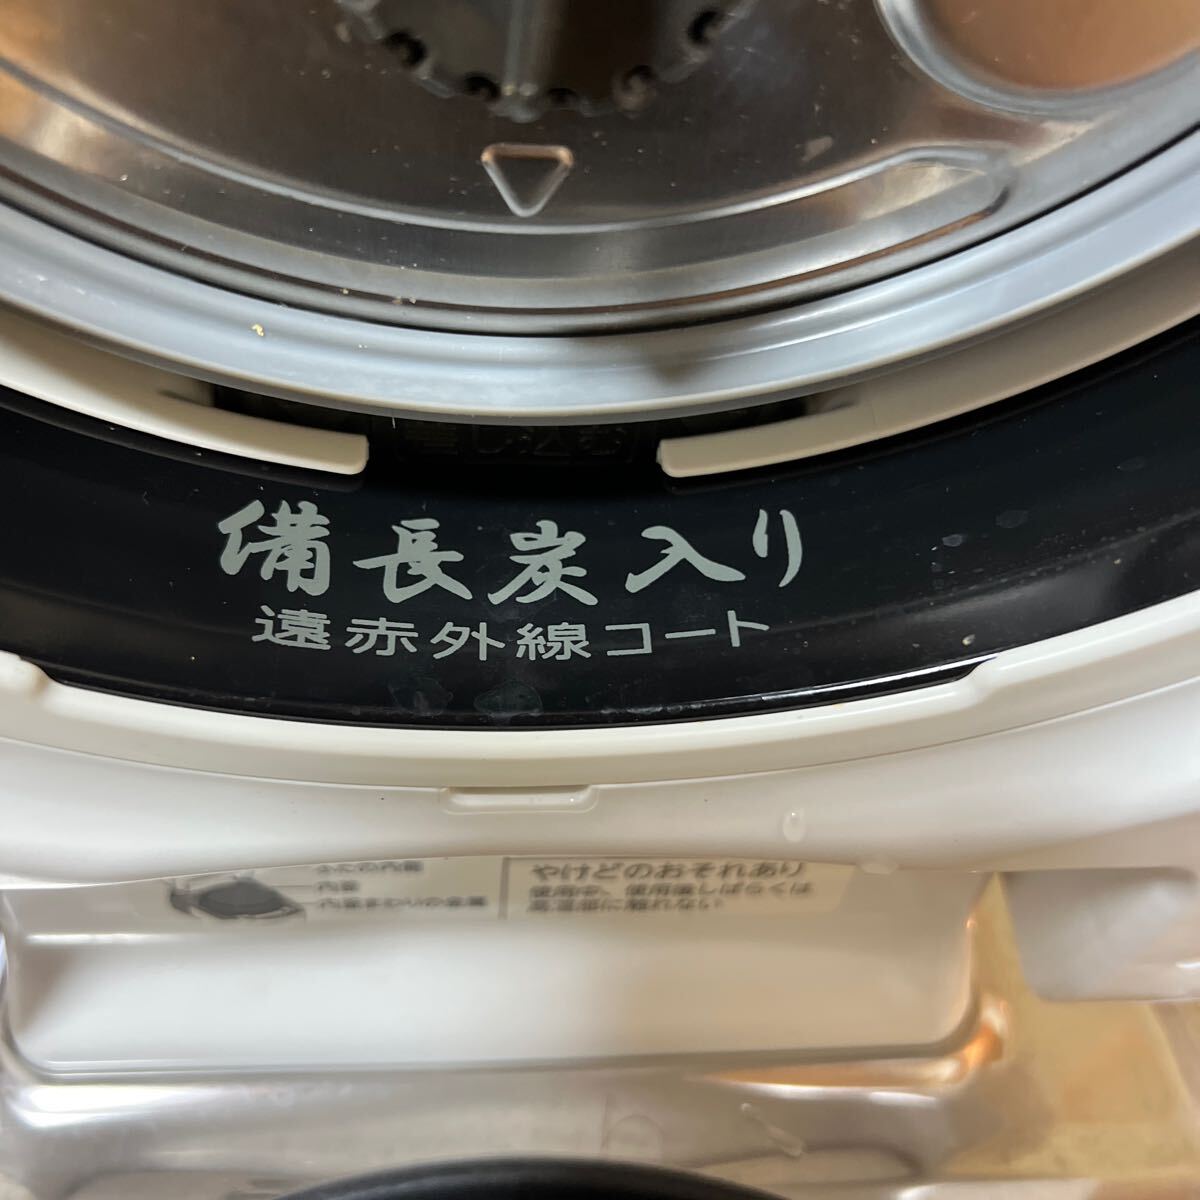  Toshiba TOSHIBA вакуум давление IH рисоварка 5.5.RC-10ZWM 21 год производства рабочее состояние подтверждено 